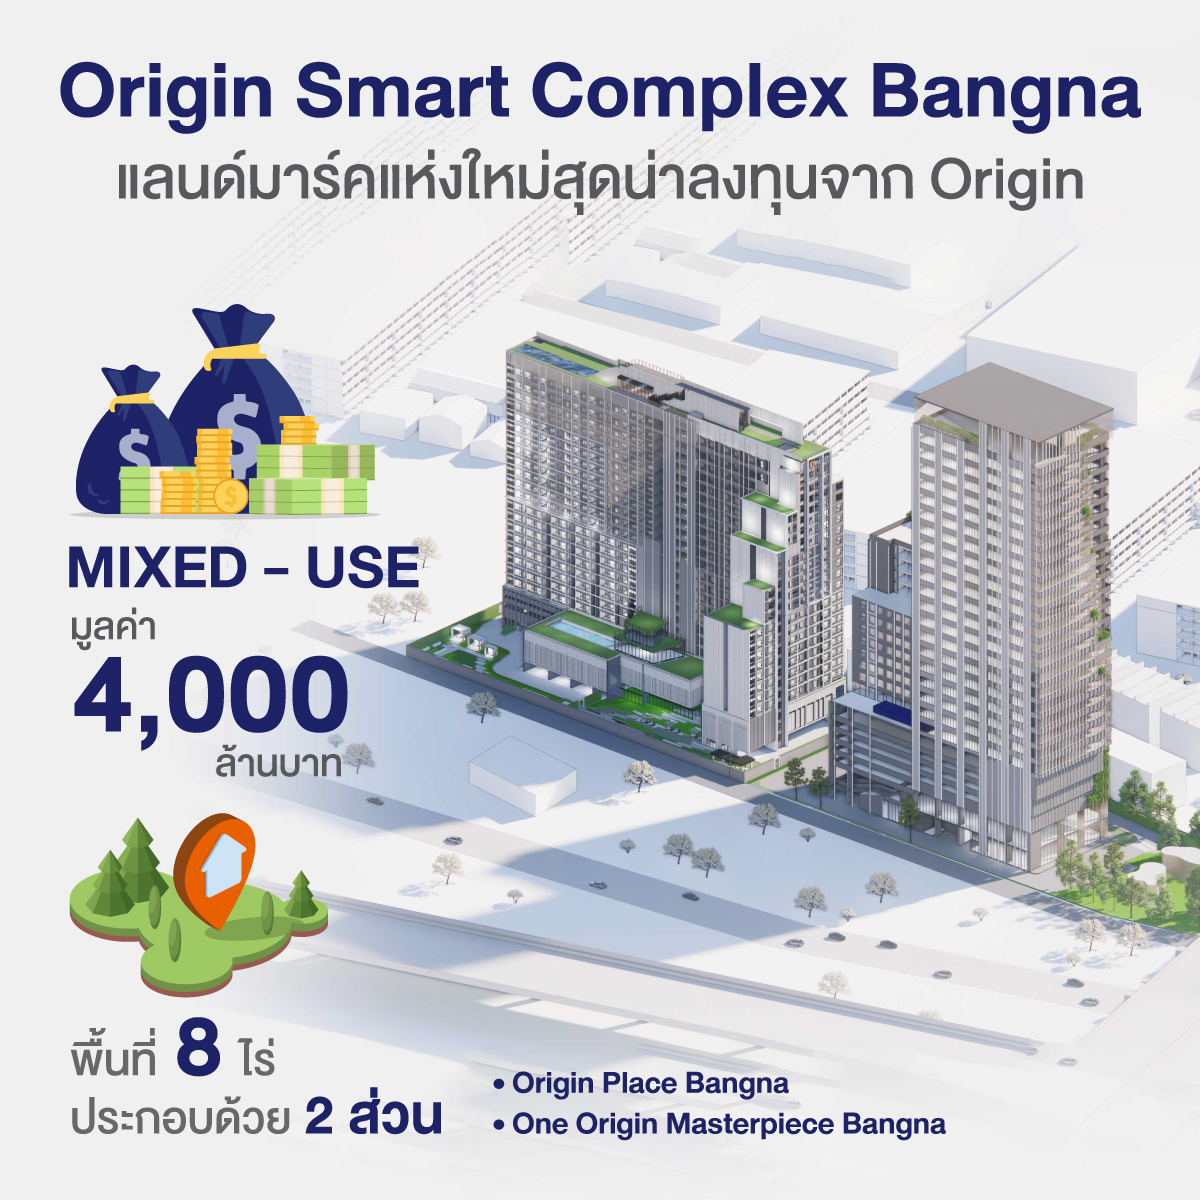 Origin Smart Complex แลนด์มาร์กแห่งใหม่ สุดน่าลงทุนจาก ออริจิ้น